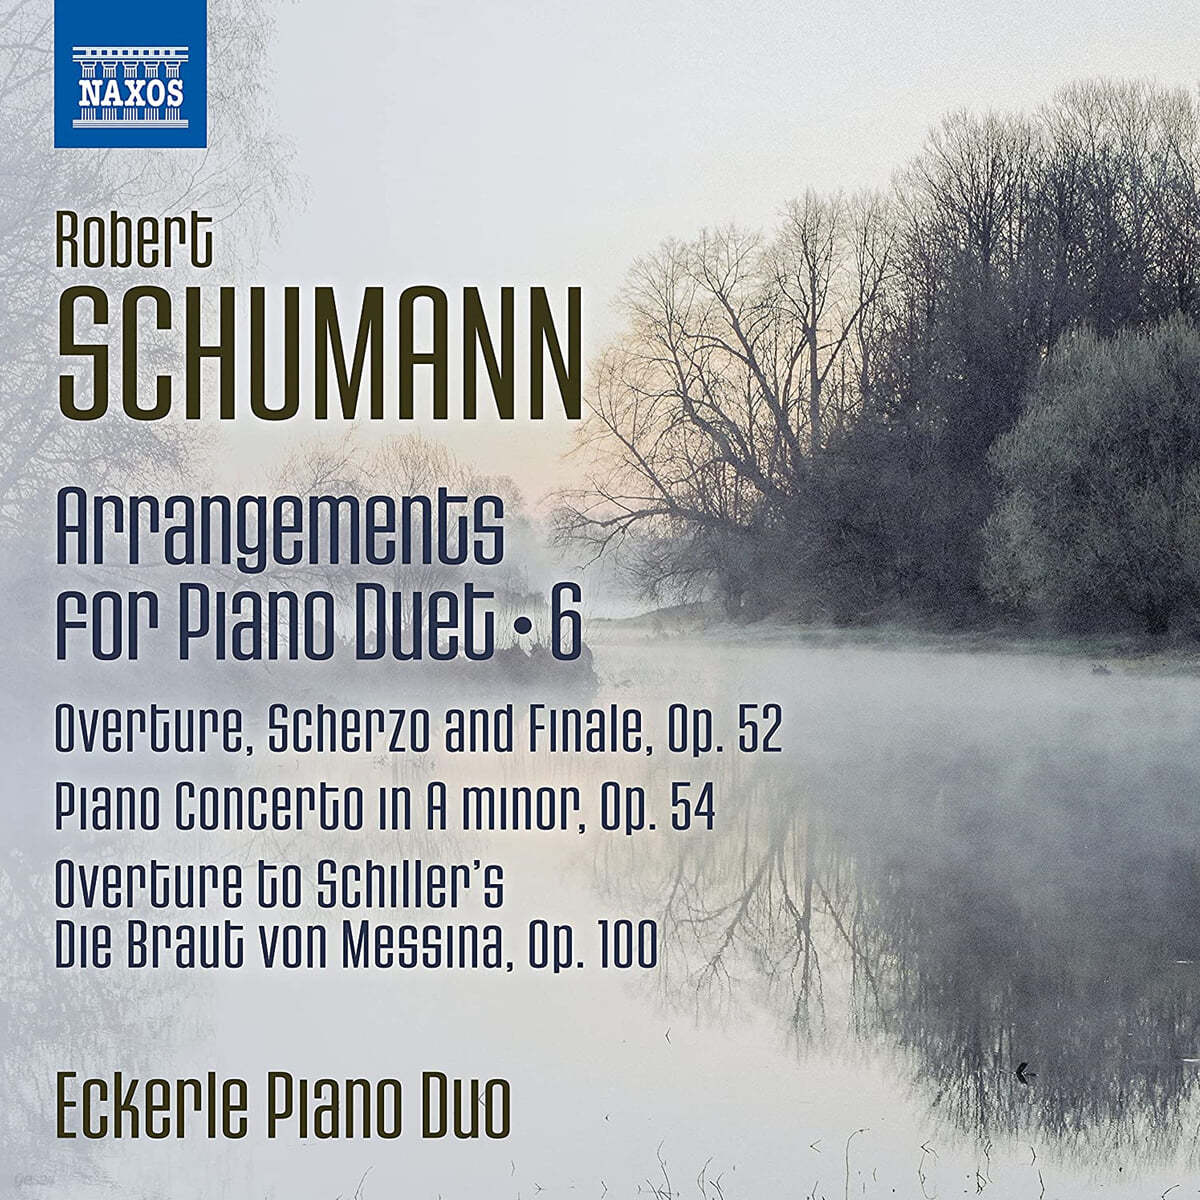 Eckerle Piano Duo 슈만: 피아노 이중주를 위한 편곡 6집 (Schumann: Arrangements for Piano Duet Vol. 6)